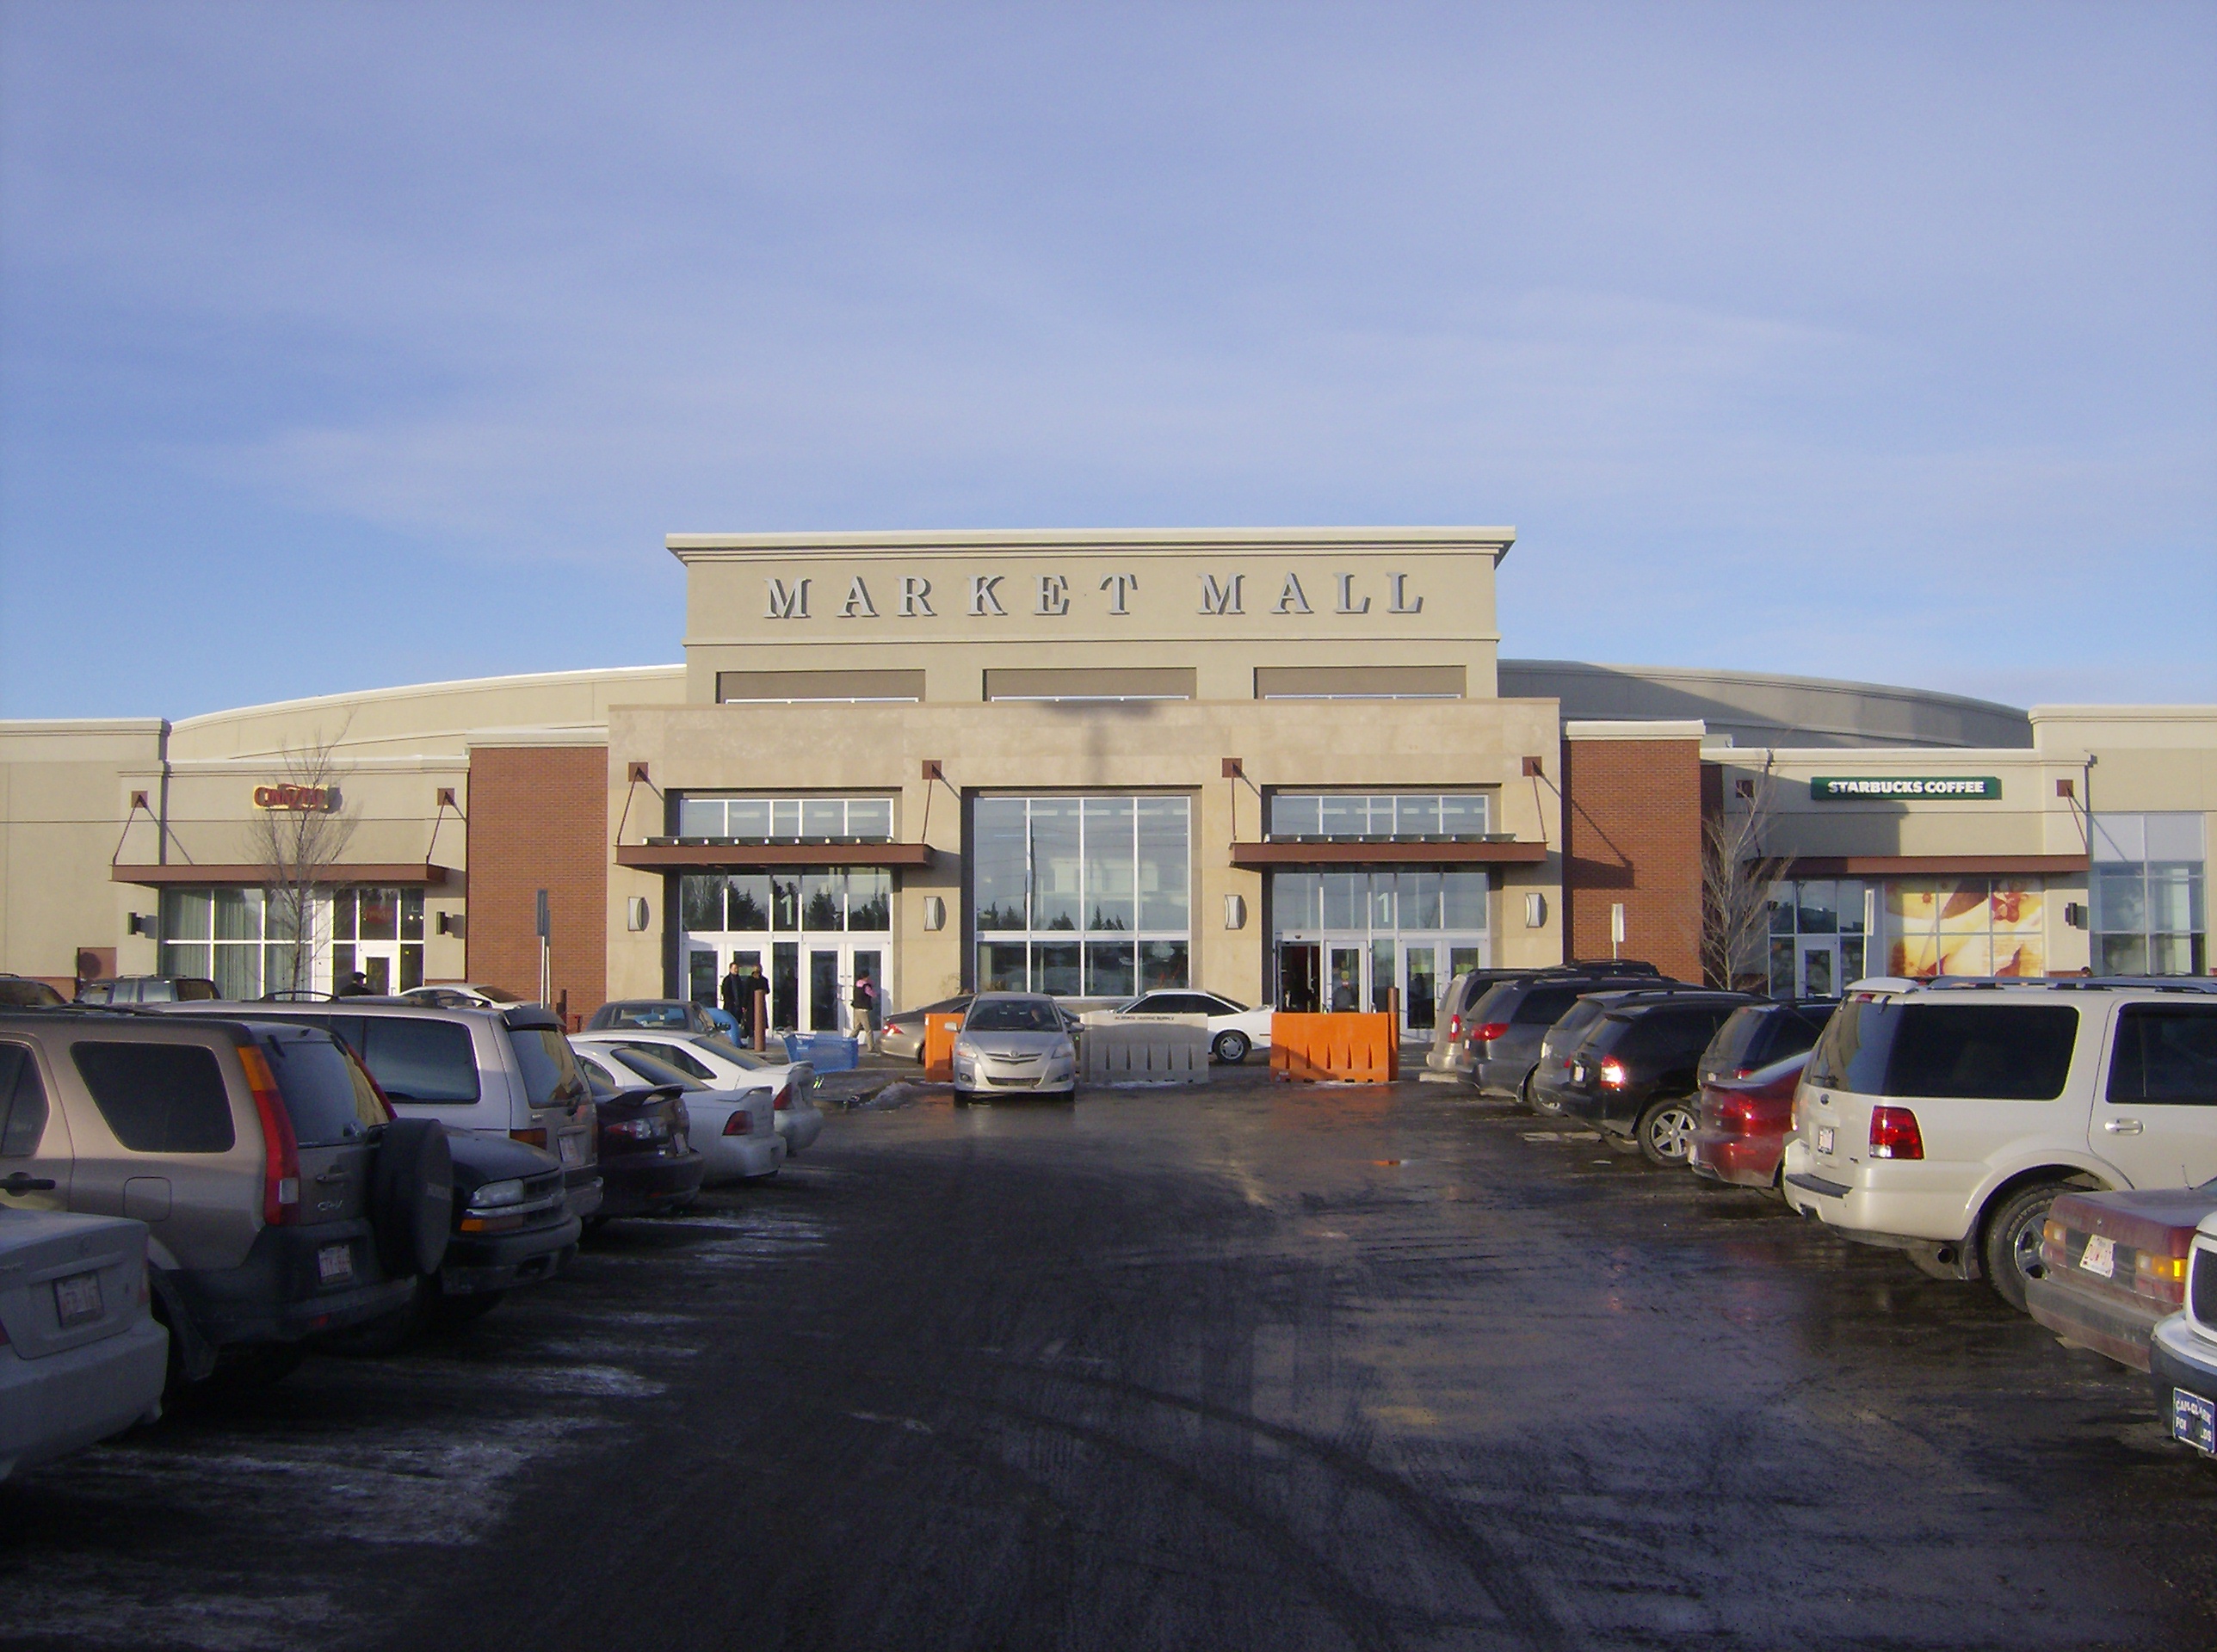 Market Mall - Wikipedia